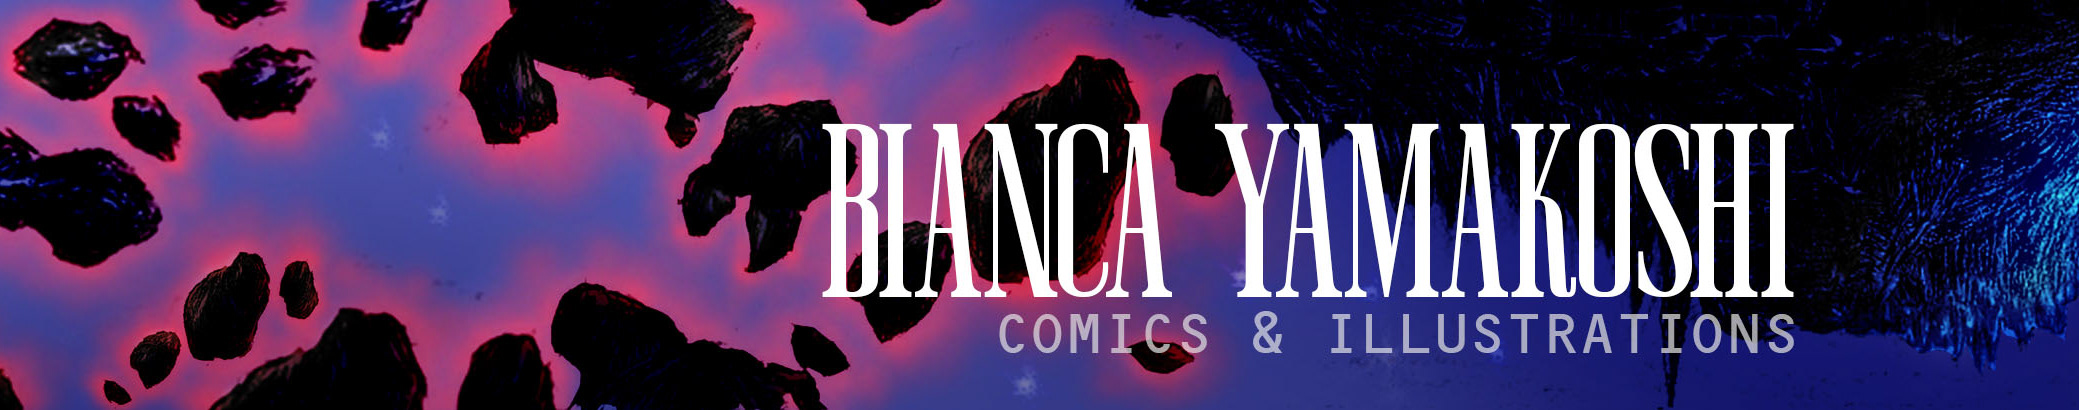 Bianca Yamakoshi's profile banner